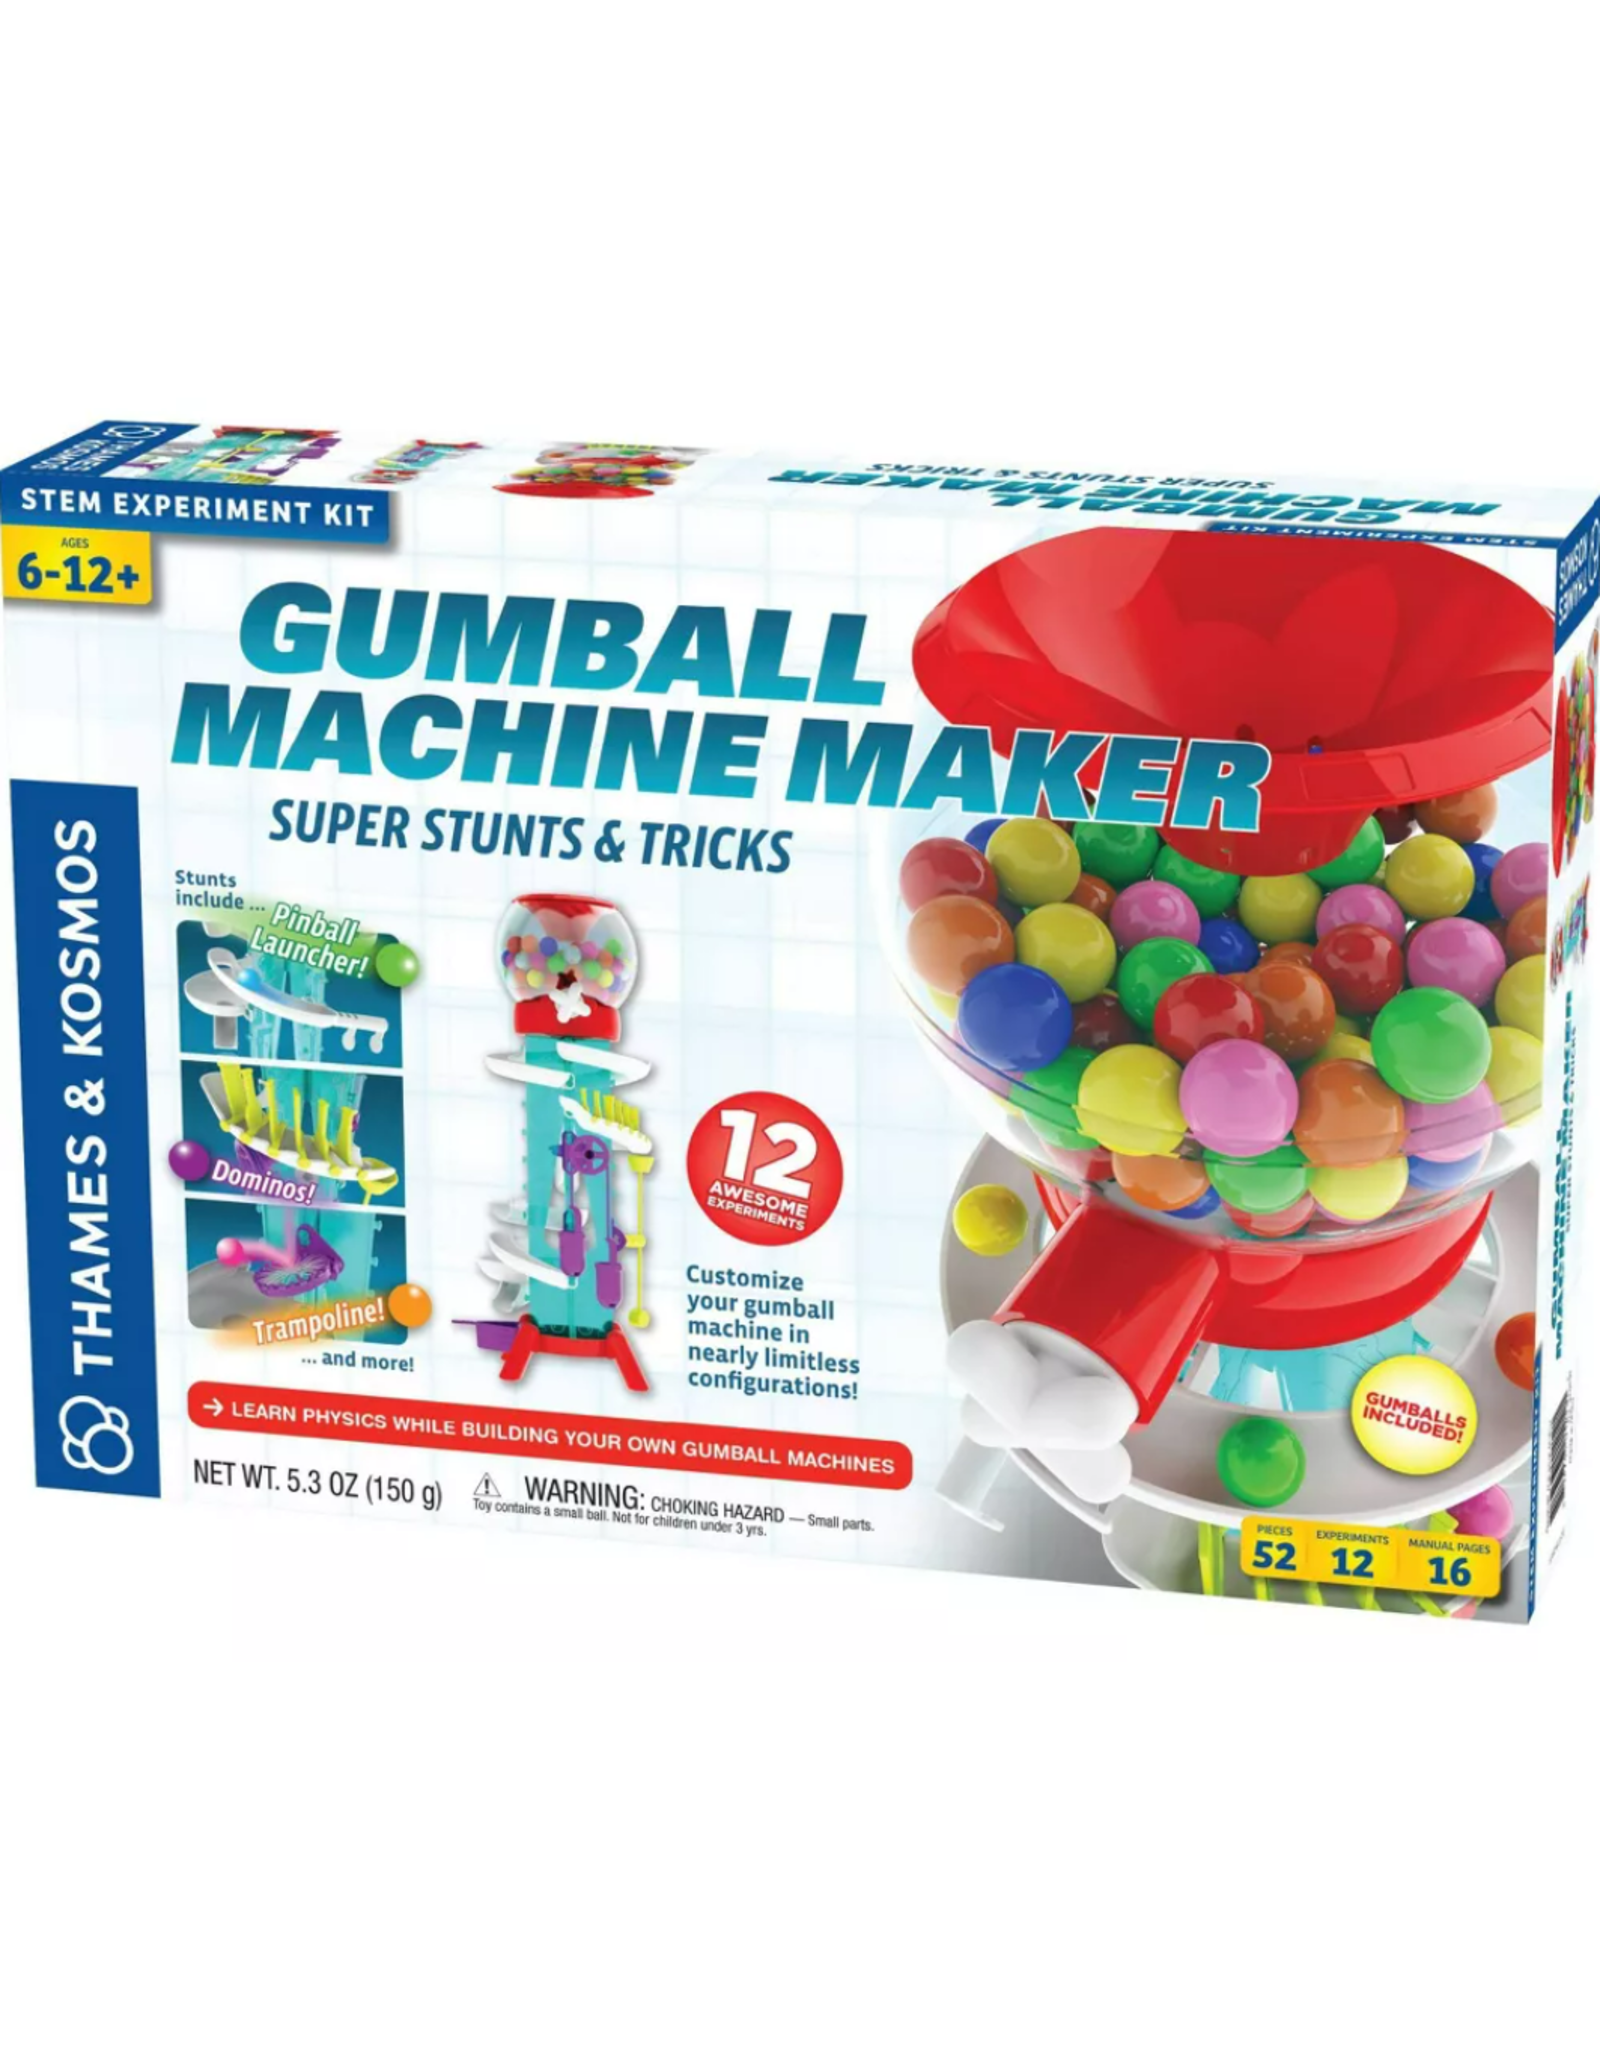 Gumball Machine Maker